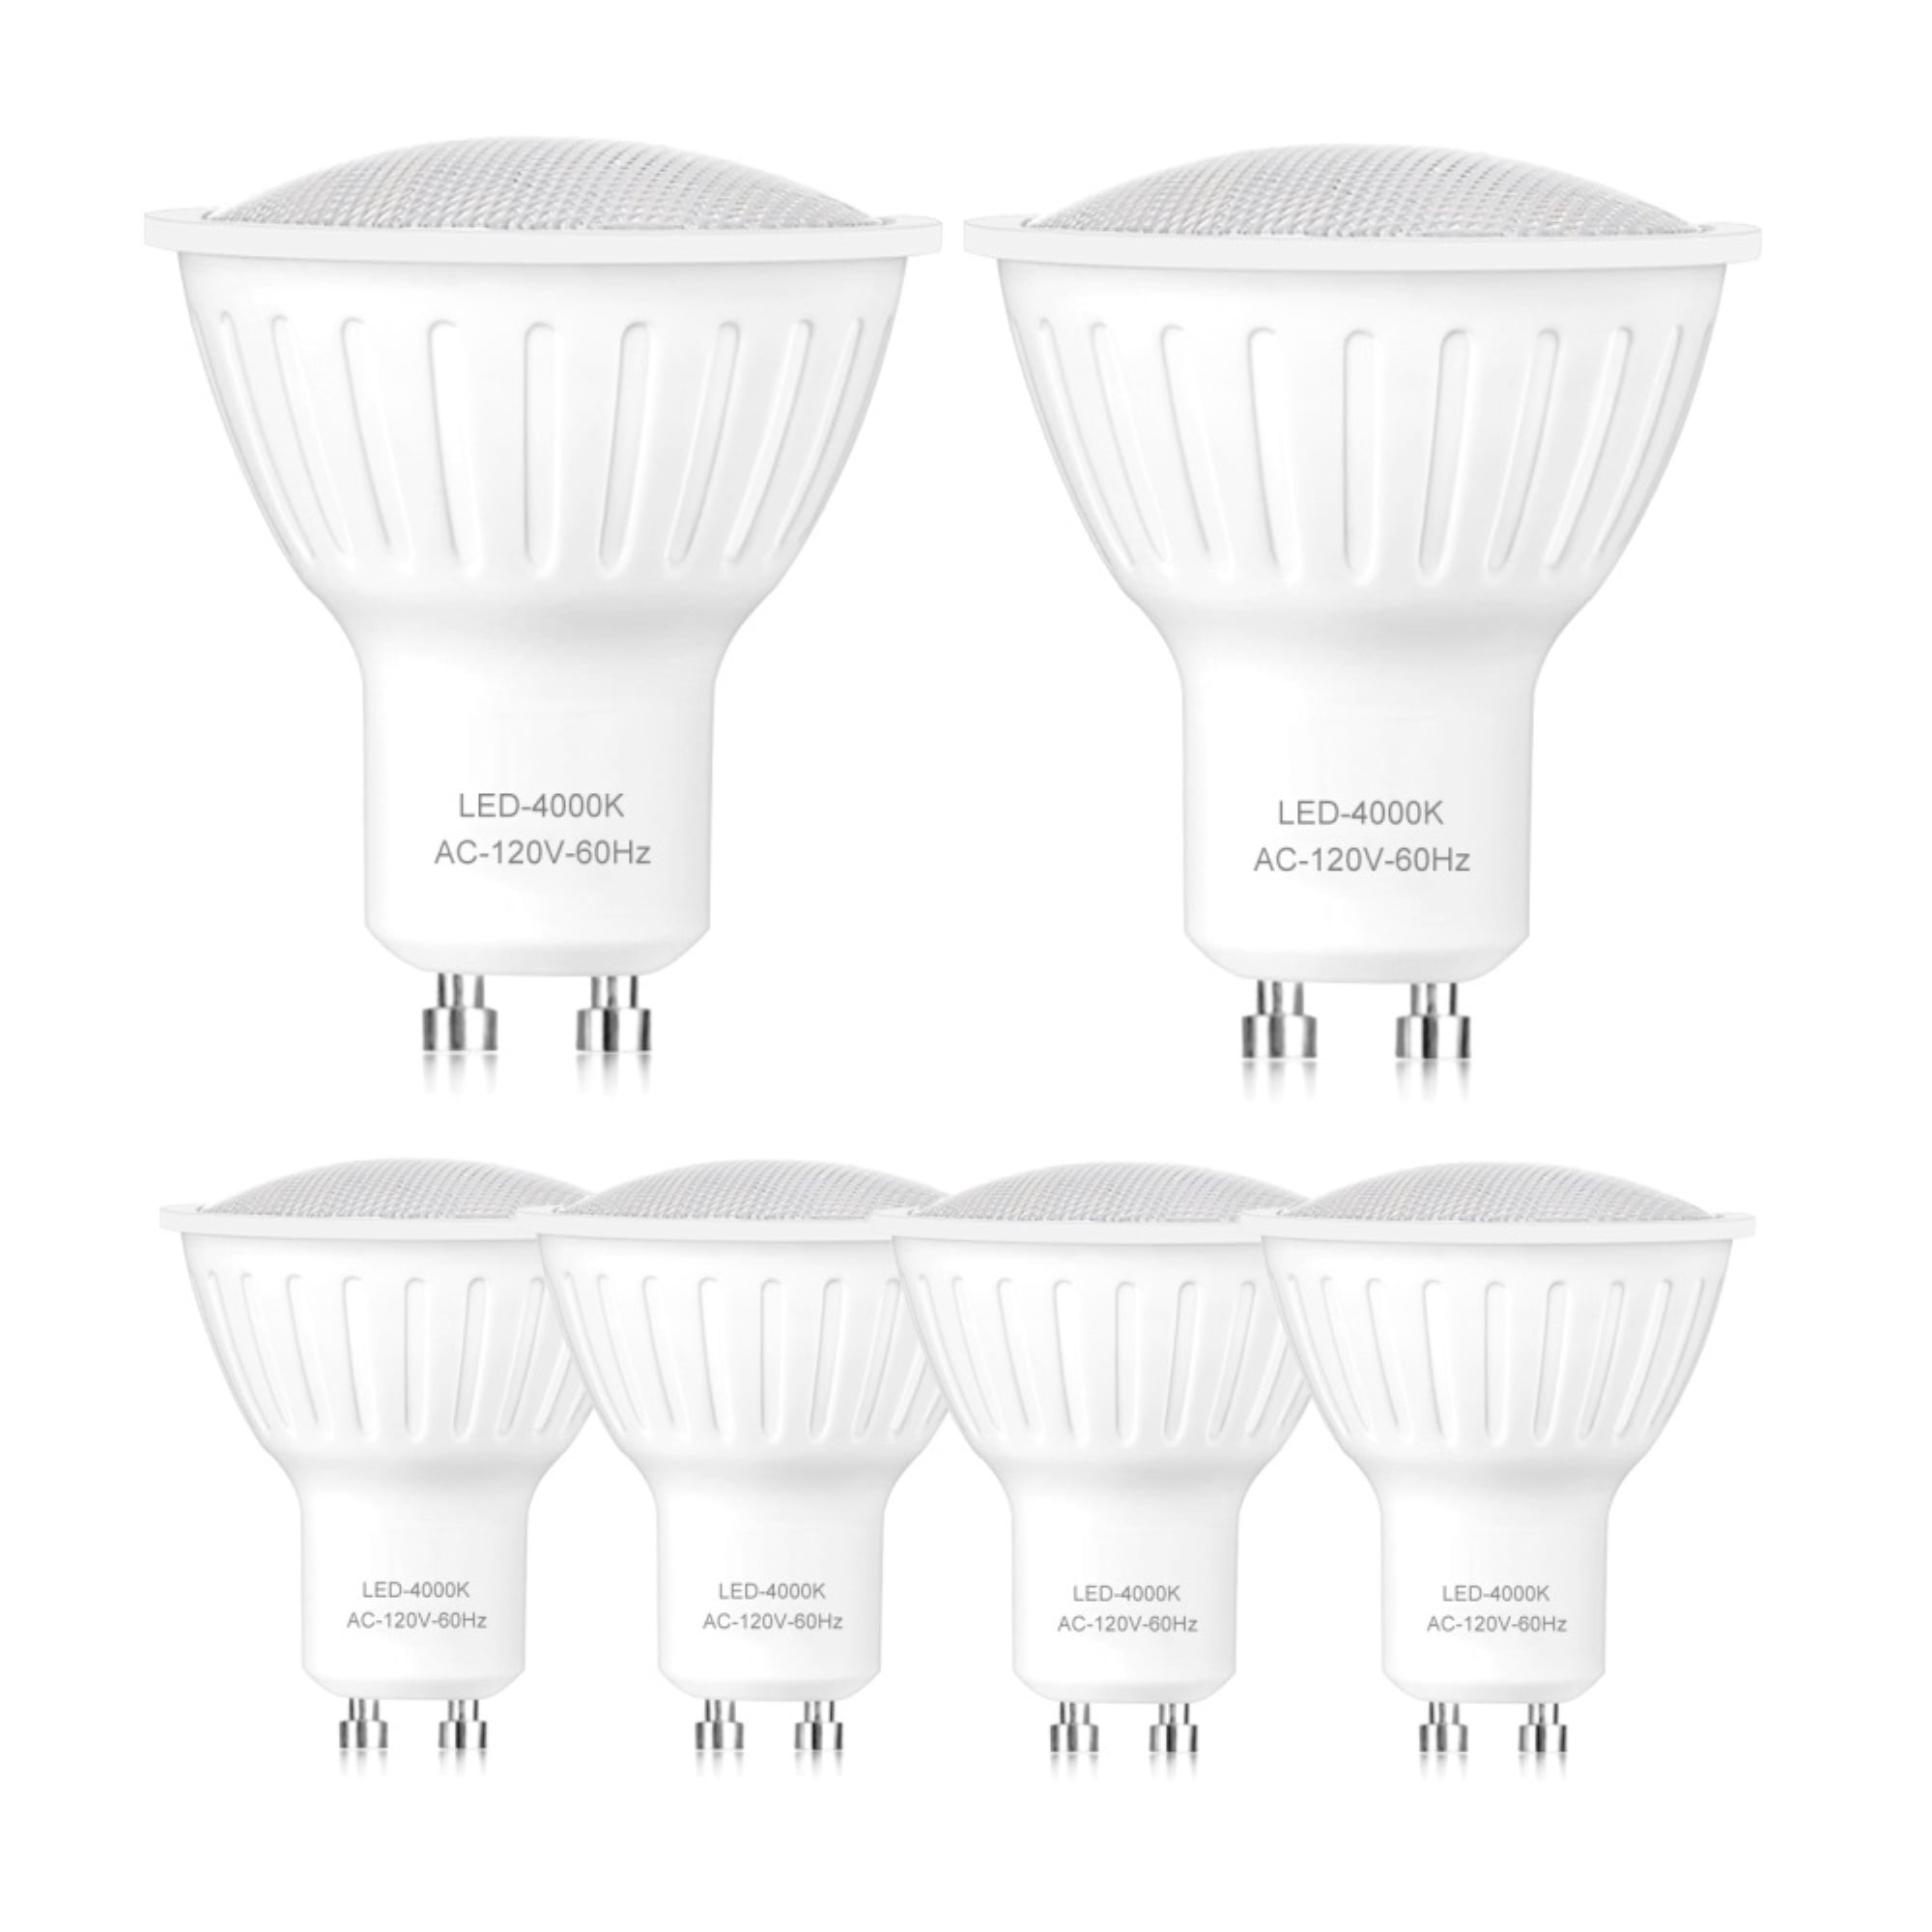 10pcs G4 Bi-Pin LED Light Bulb 3W 80 3014SMD 110V Silicone Lamp Warm White 2700K 